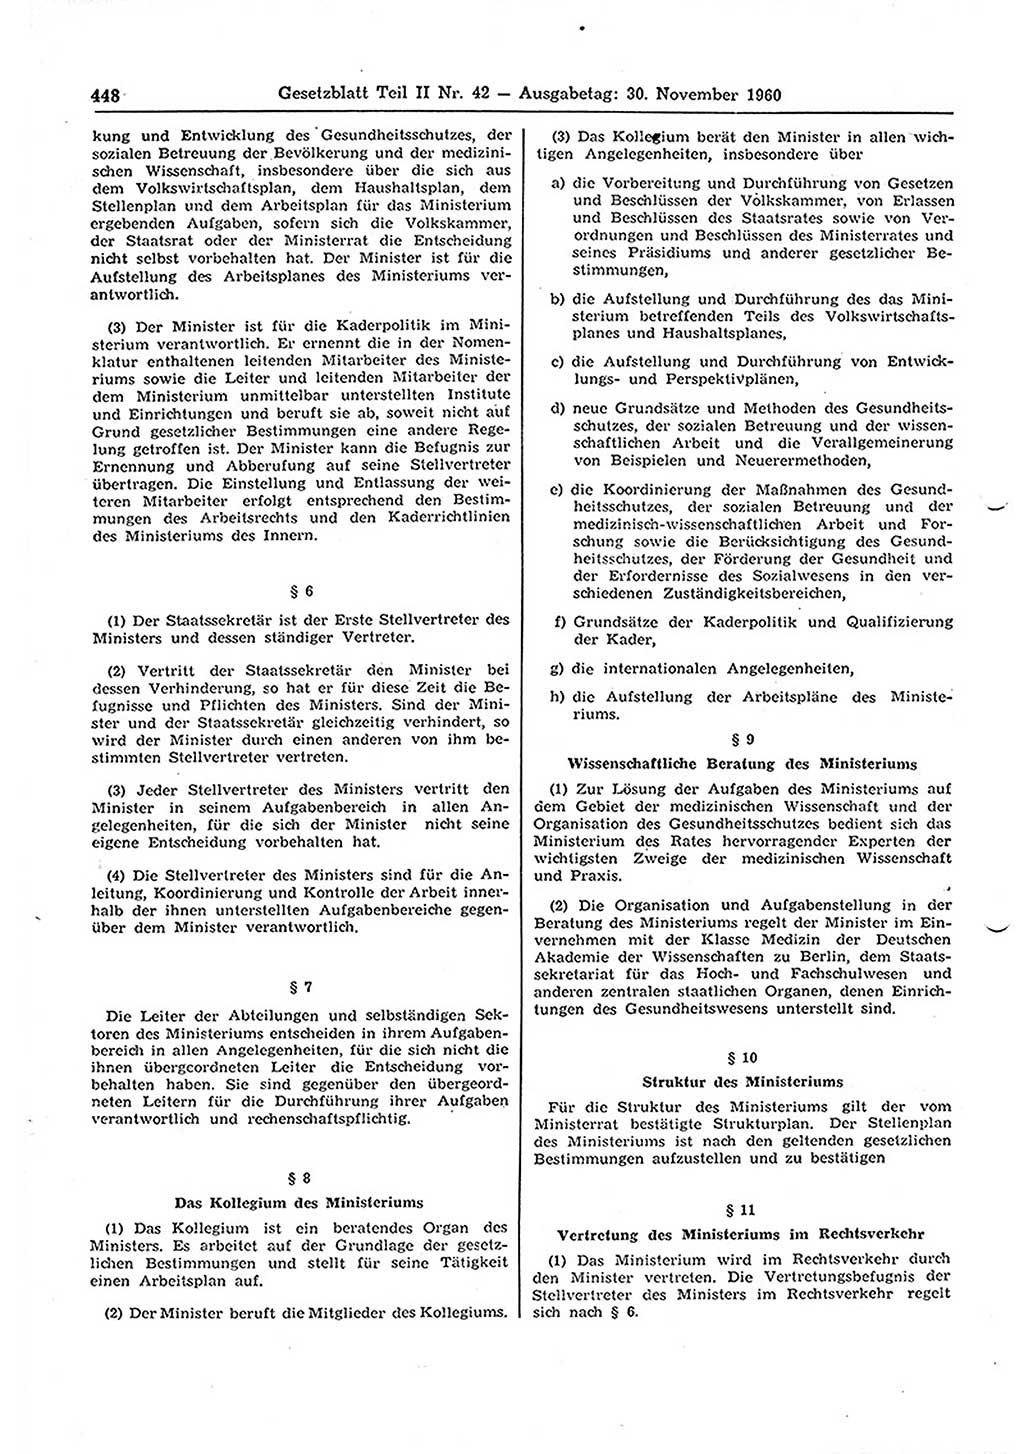 Gesetzblatt (GBl.) der Deutschen Demokratischen Republik (DDR) Teil ⅠⅠ 1960, Seite 448 (GBl. DDR ⅠⅠ 1960, S. 448)